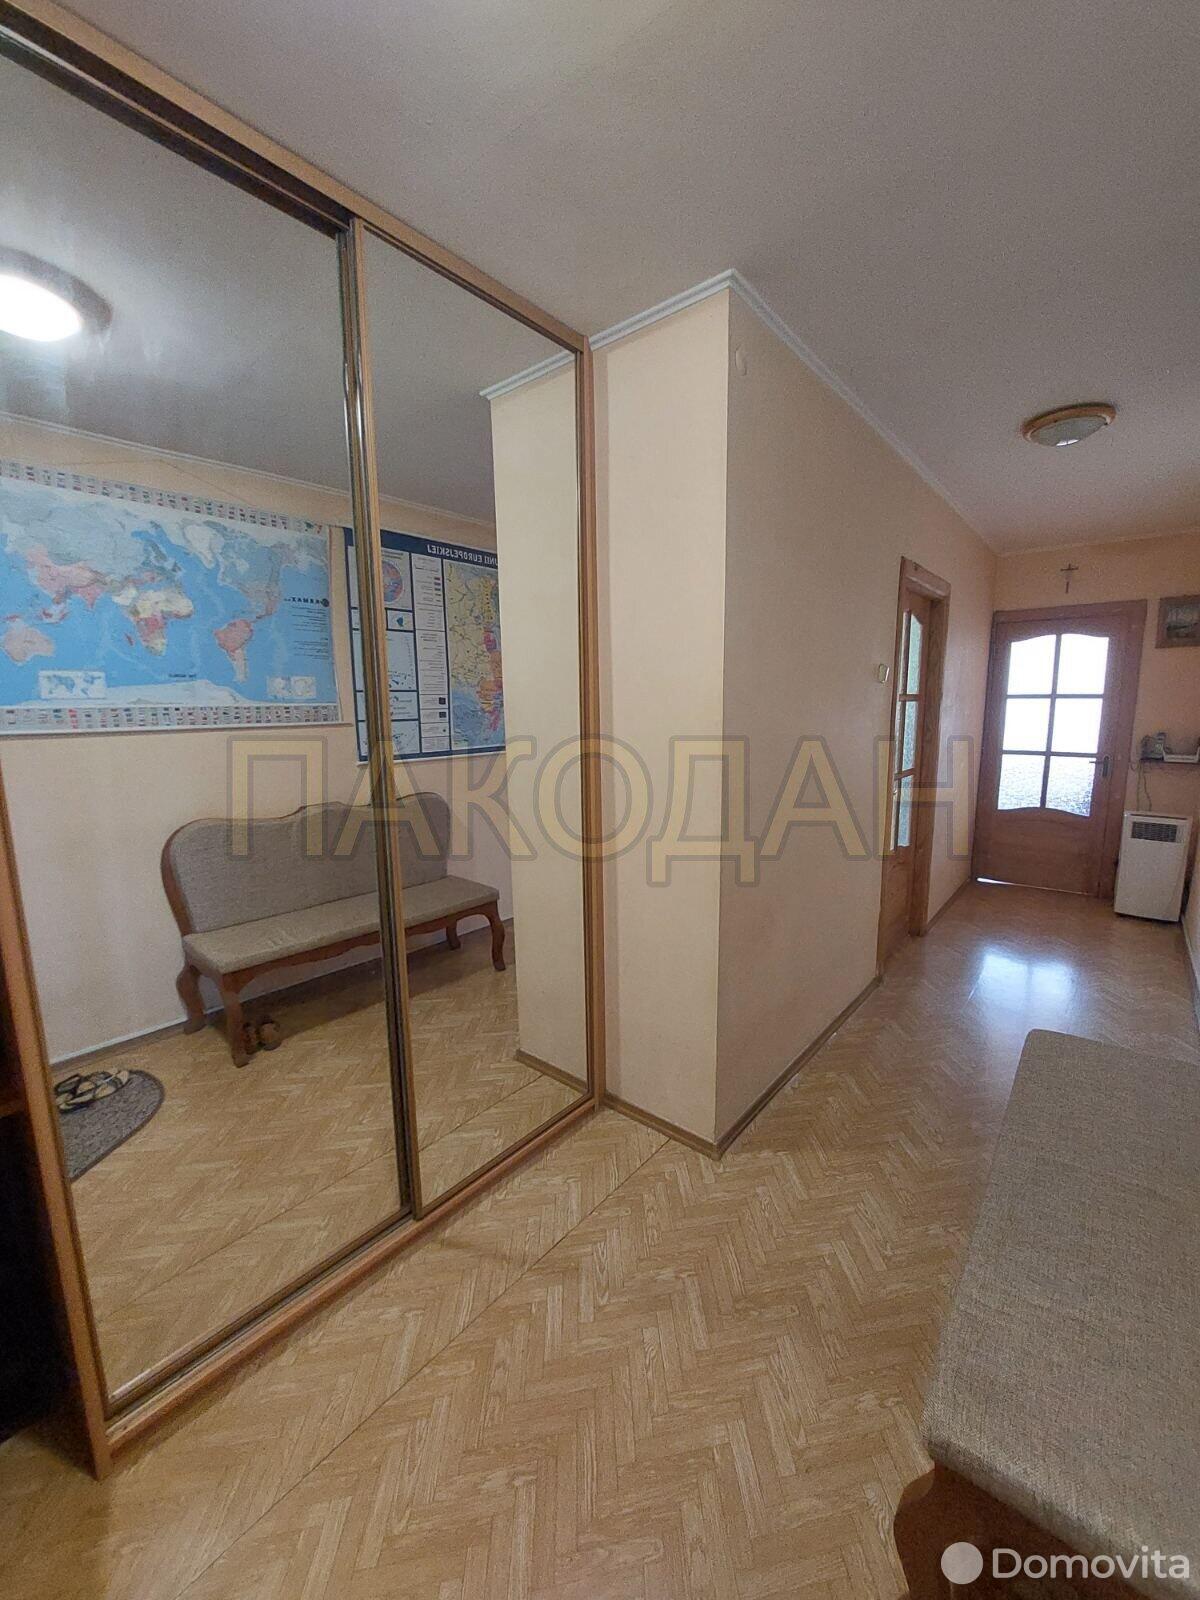 квартира, Барановичи, ул. Войкова, стоимость продажи 97 588 р.